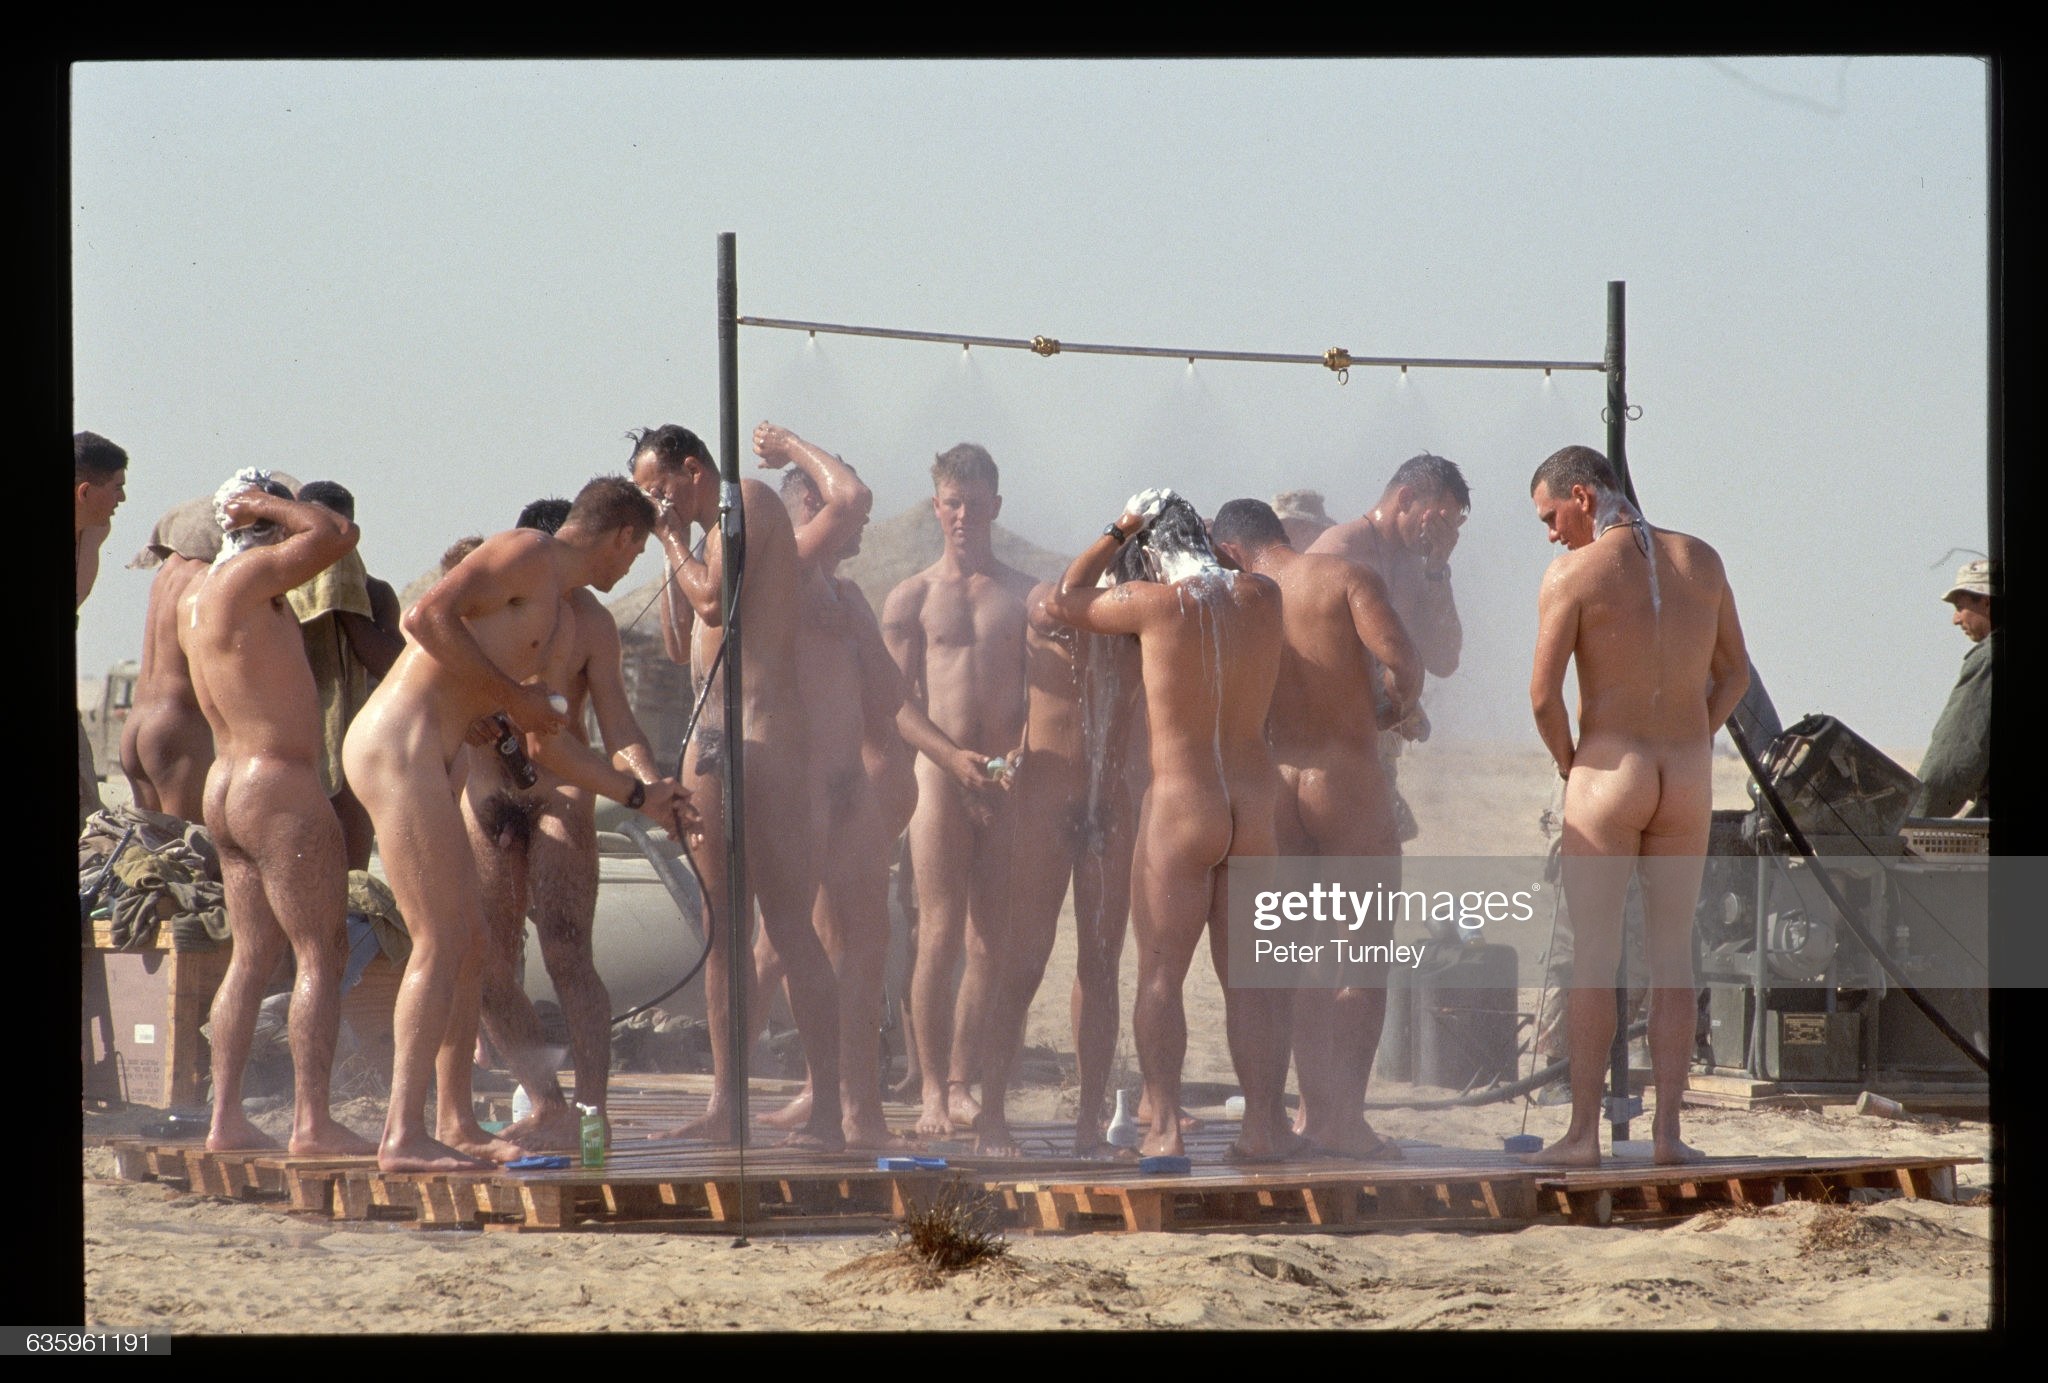 мужики купаются голыми в бане фото 116